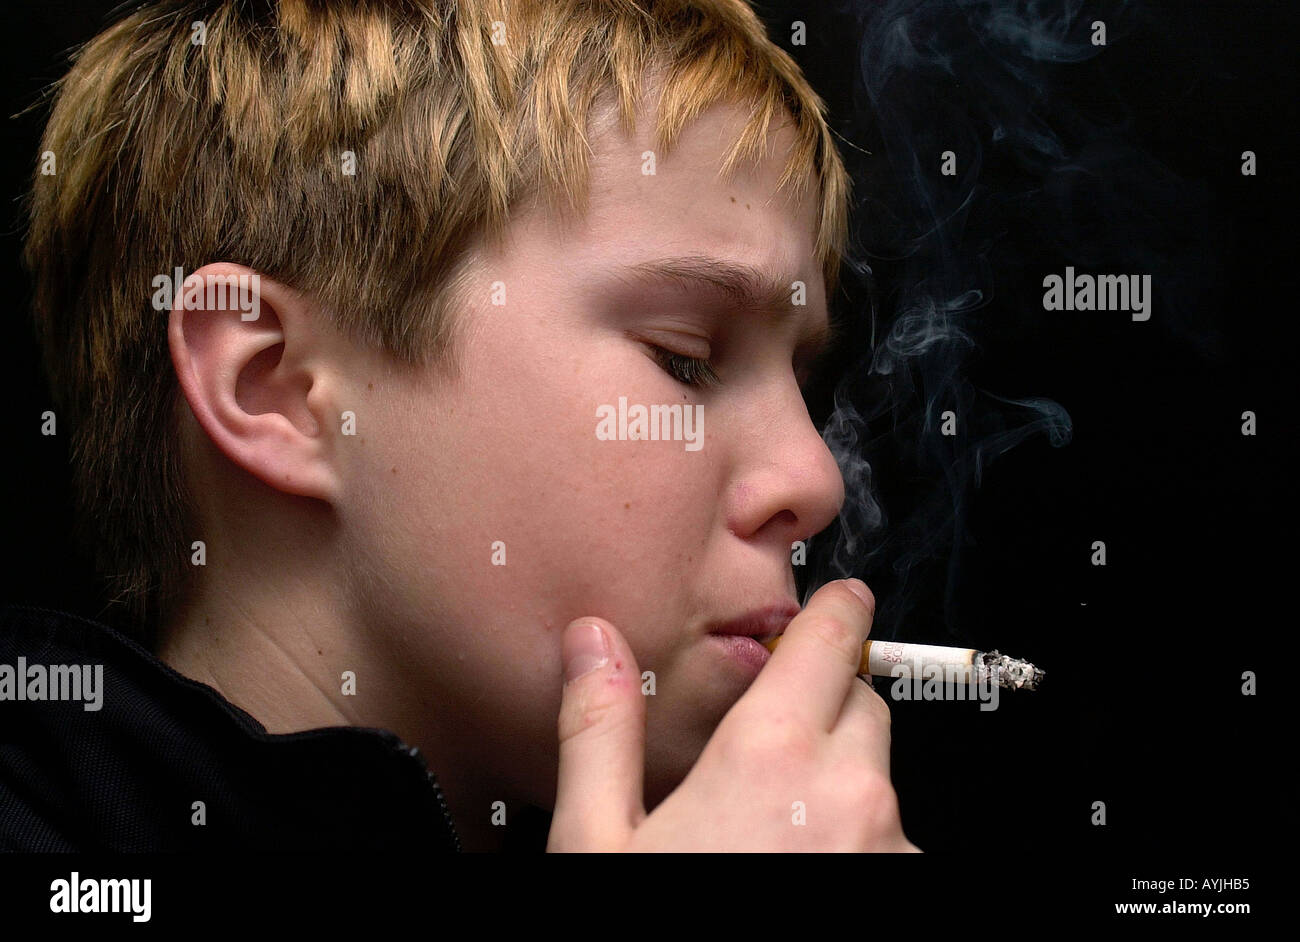 Ein Junge raucht eine Zigarette Stock Photo